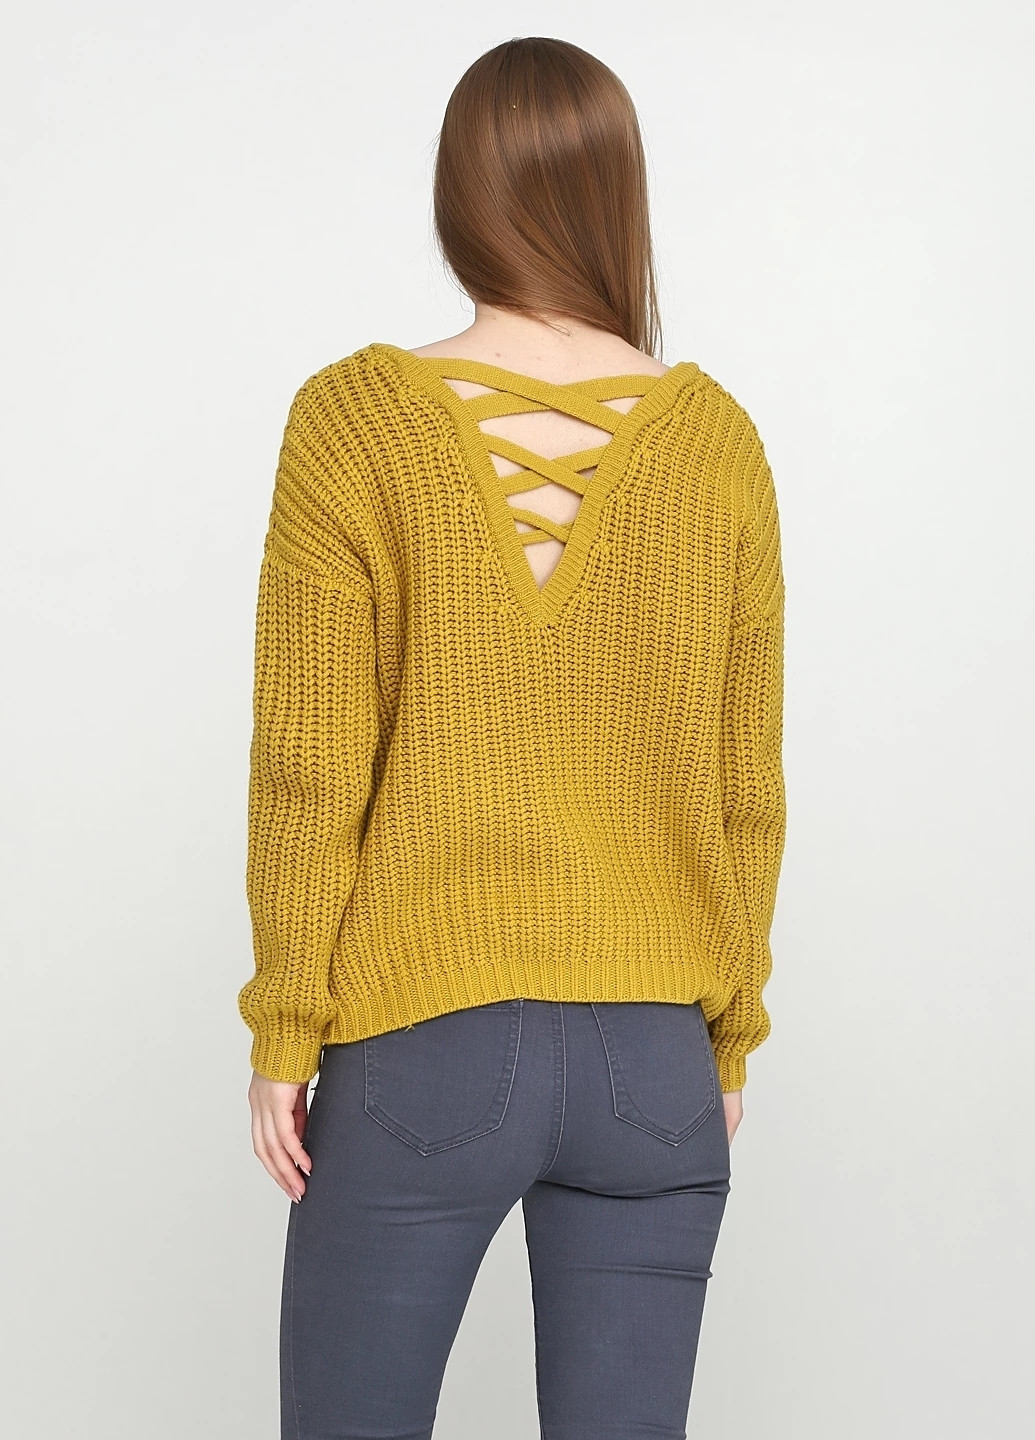 Оливковый демисезонный пуловер пуловер TU